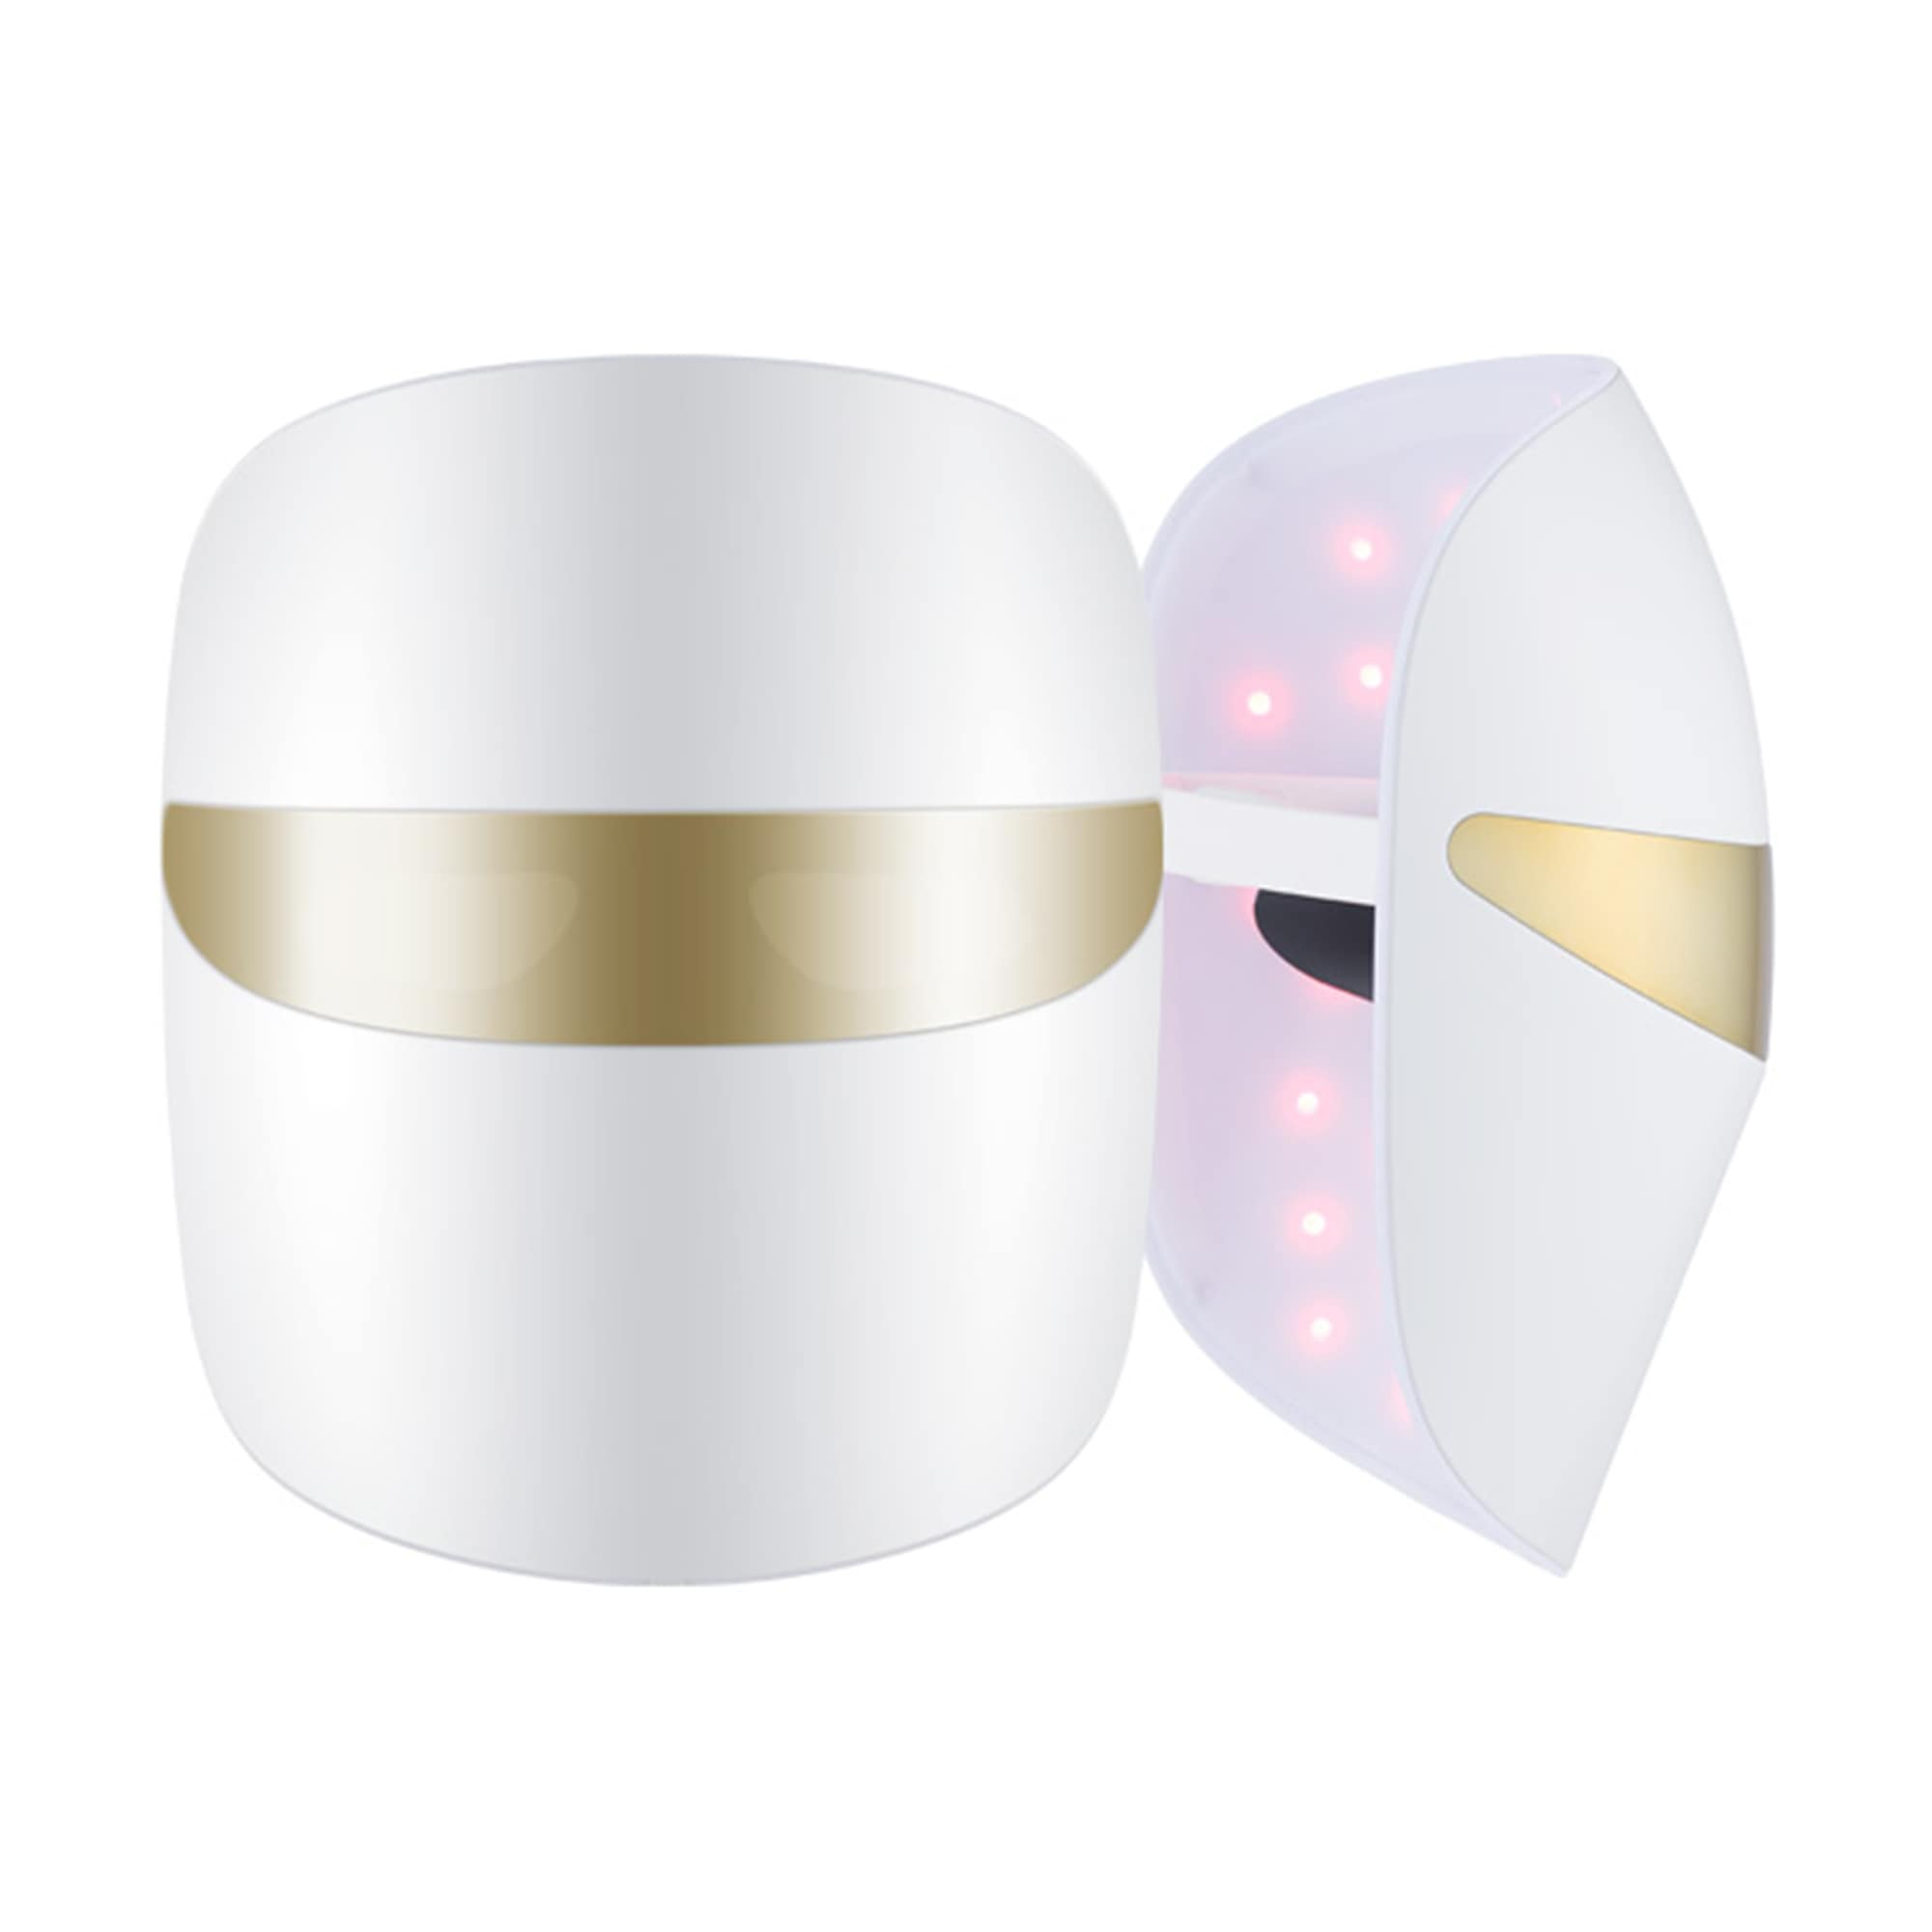 뷰티 디바이스 더마 LED 마스크 (BWJ2.AKOR) 줌이미지 0